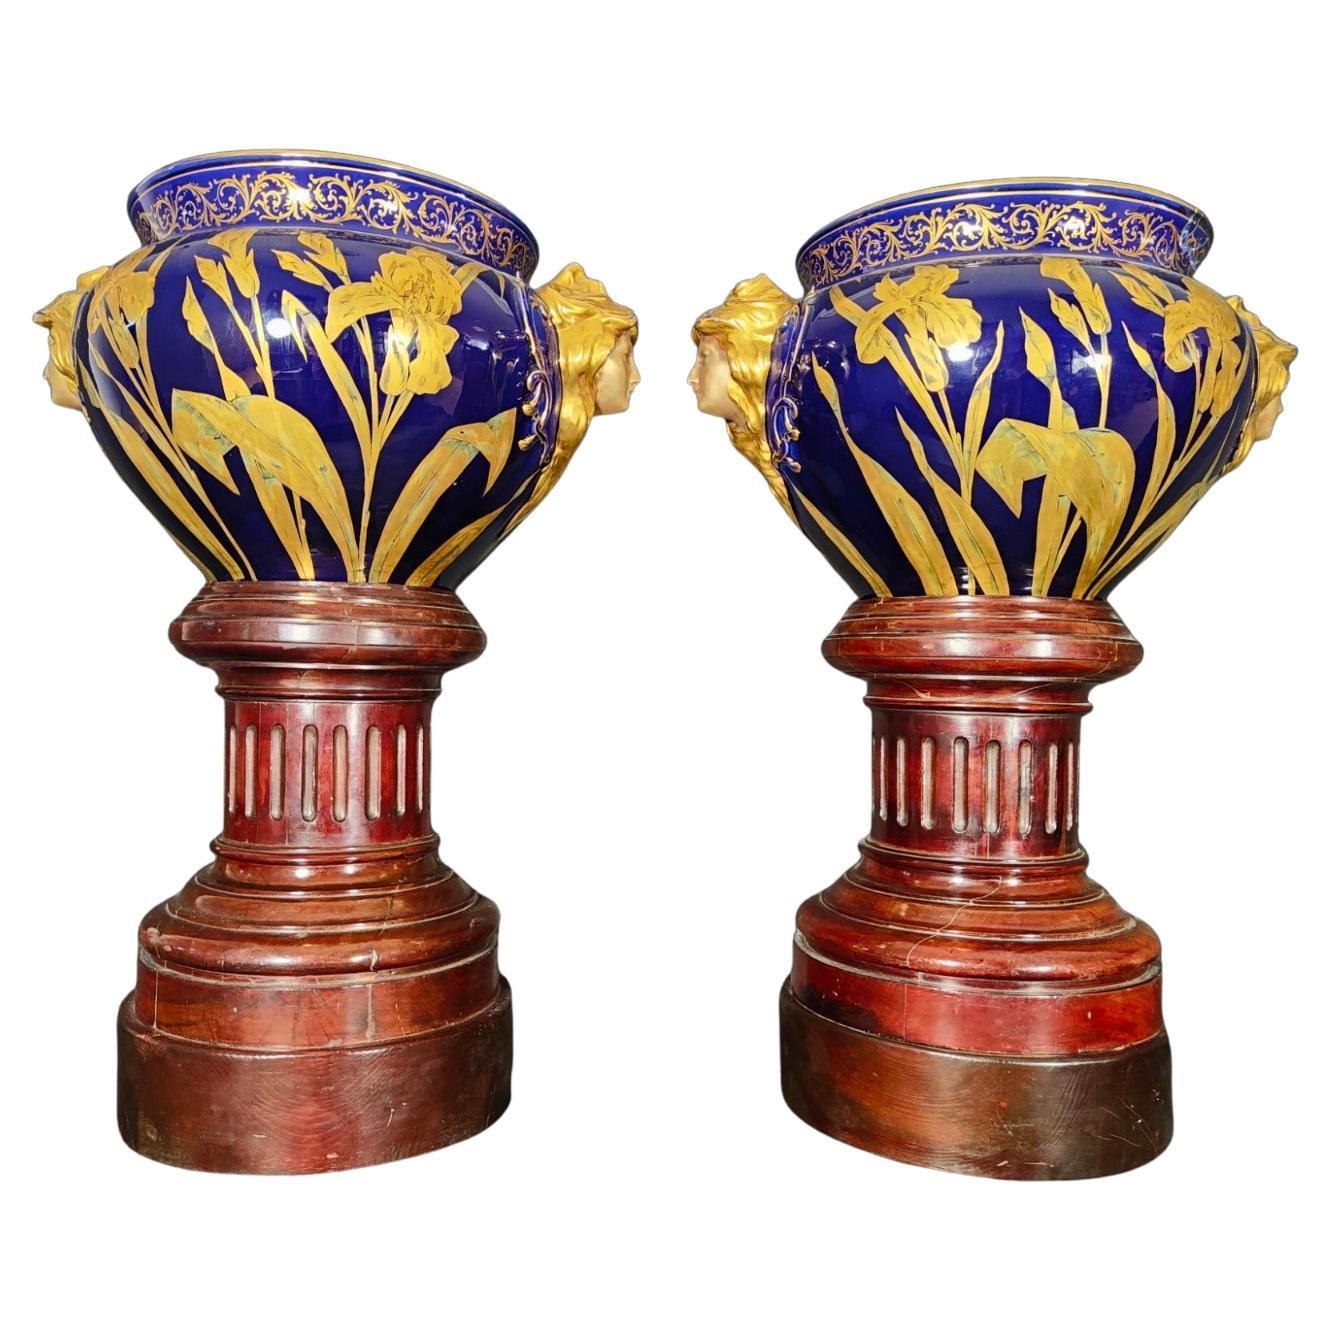 Pair of Art Nouveau Planters 20th Century